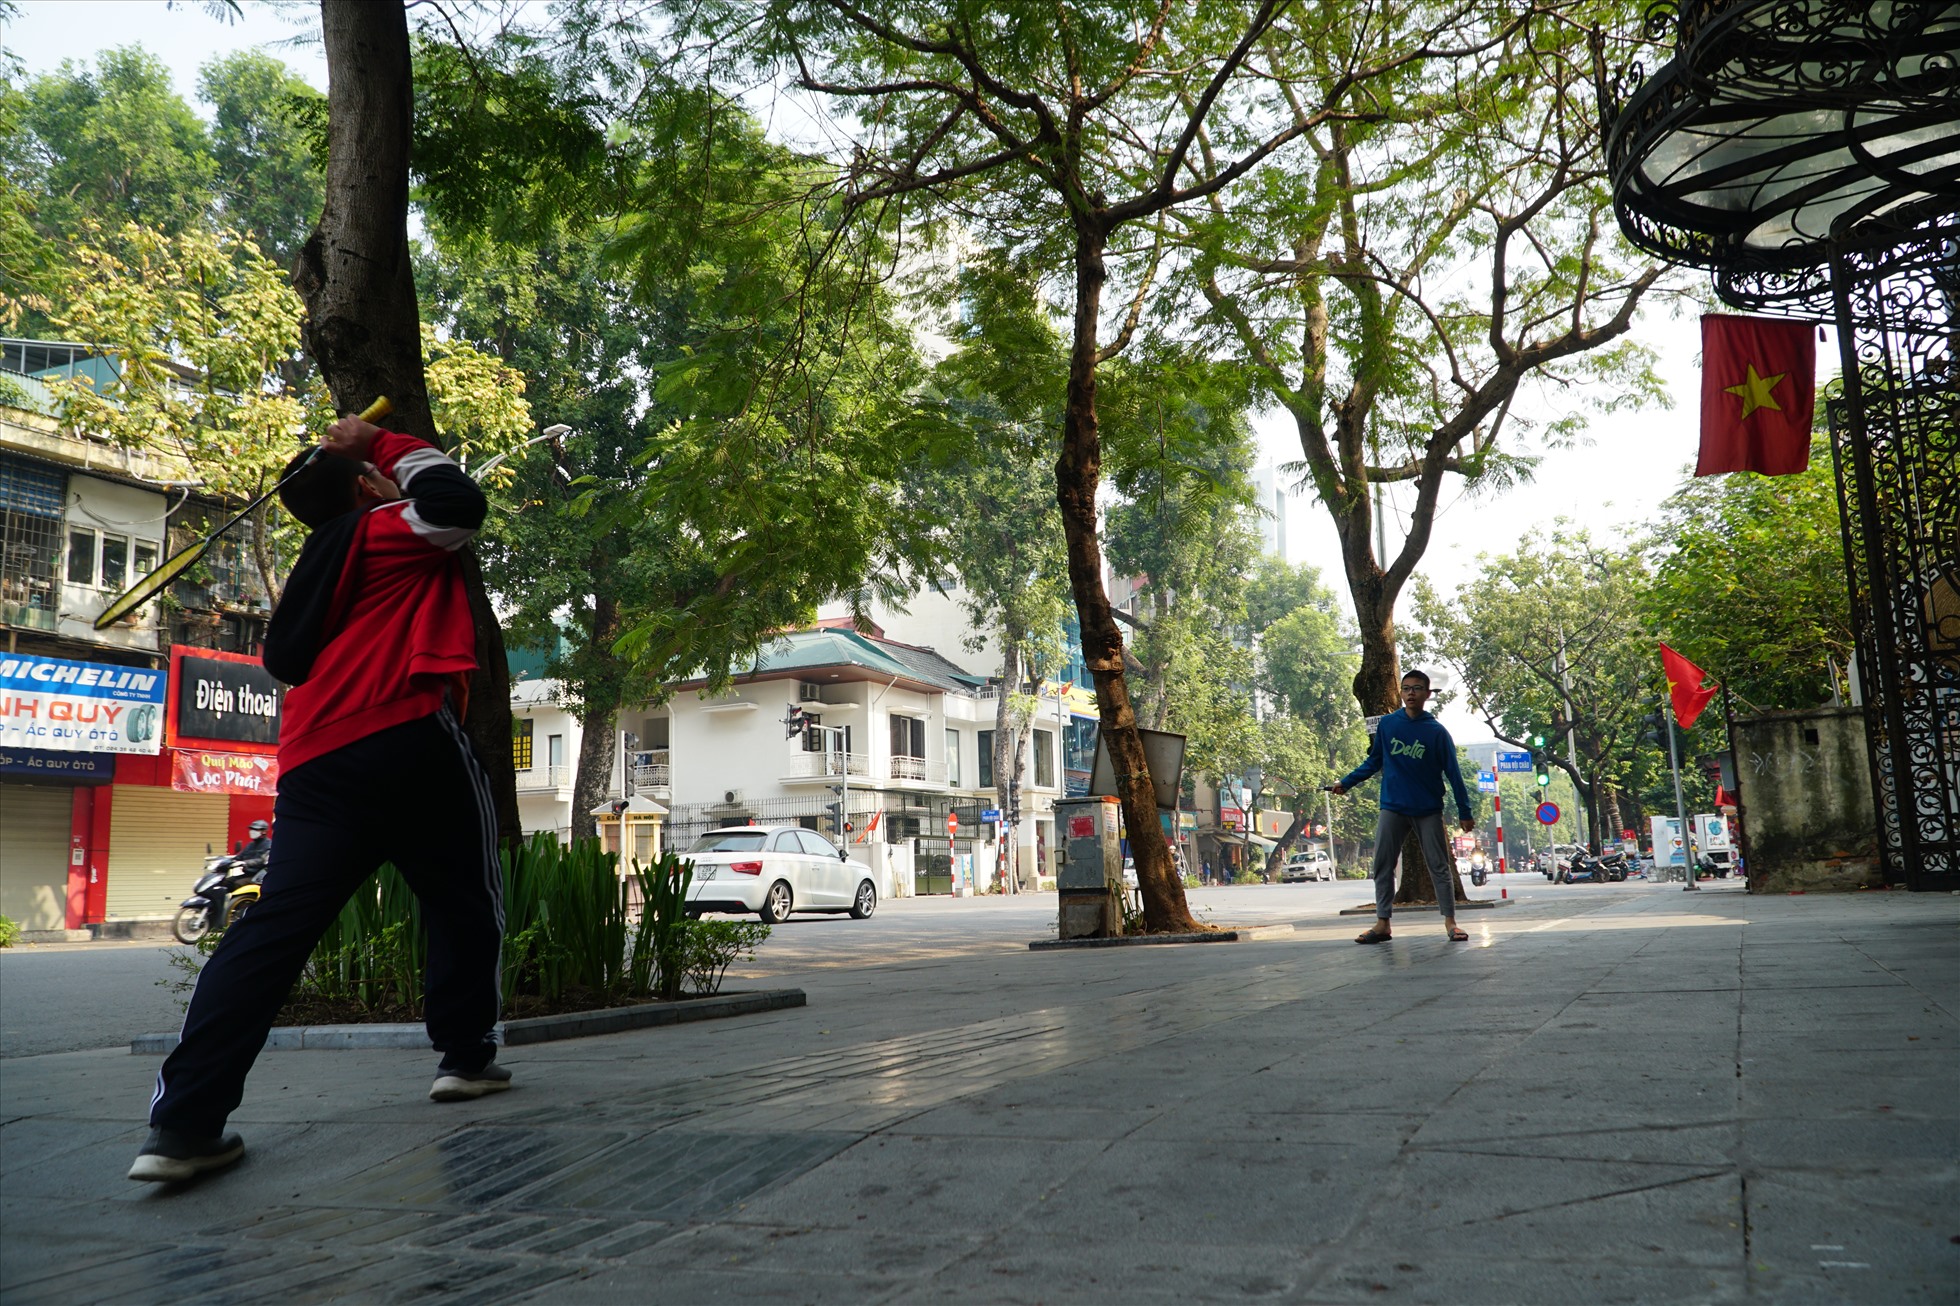 Em Trần Đức Huy học sinh trường THCS Hoàn Kiếm chia sẻ: “Hôm nay đường thông thoáng hơn hẳn, chúng cháu có thể chơi cầu lông trên vỉa hè mà không quá lo lắng về xe cộ đi lại“.